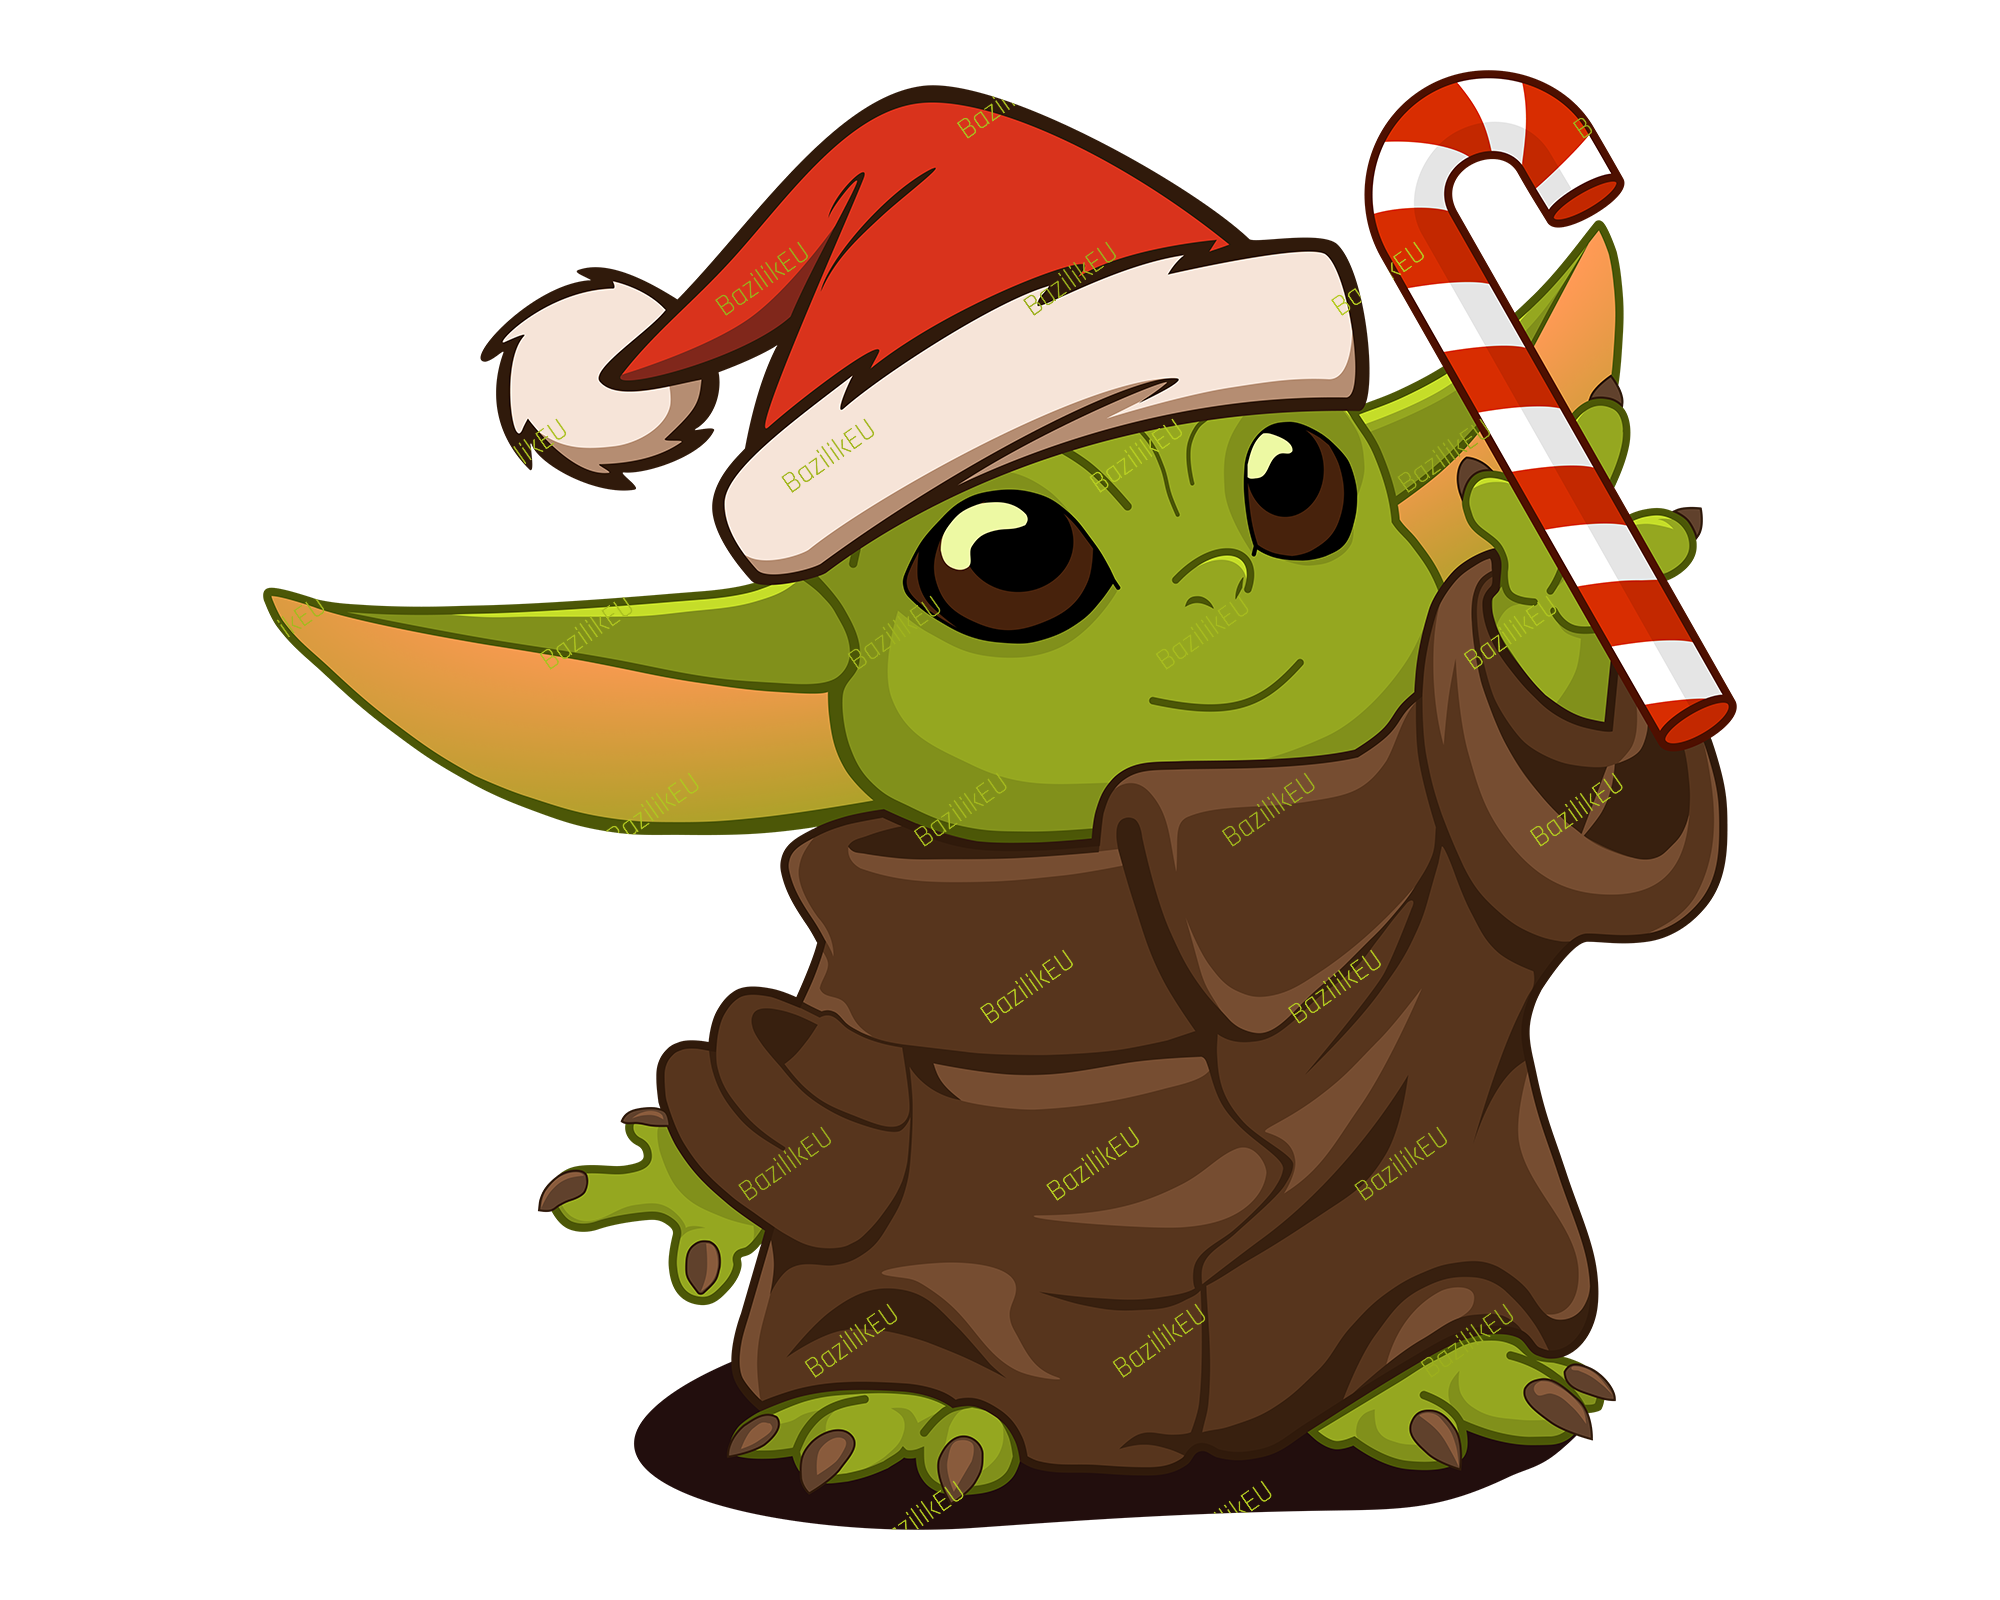 Christmas Baby Yoda SVG Printable. Christmas cartoon characters, Star wars cartoon, Easy christmas drawings